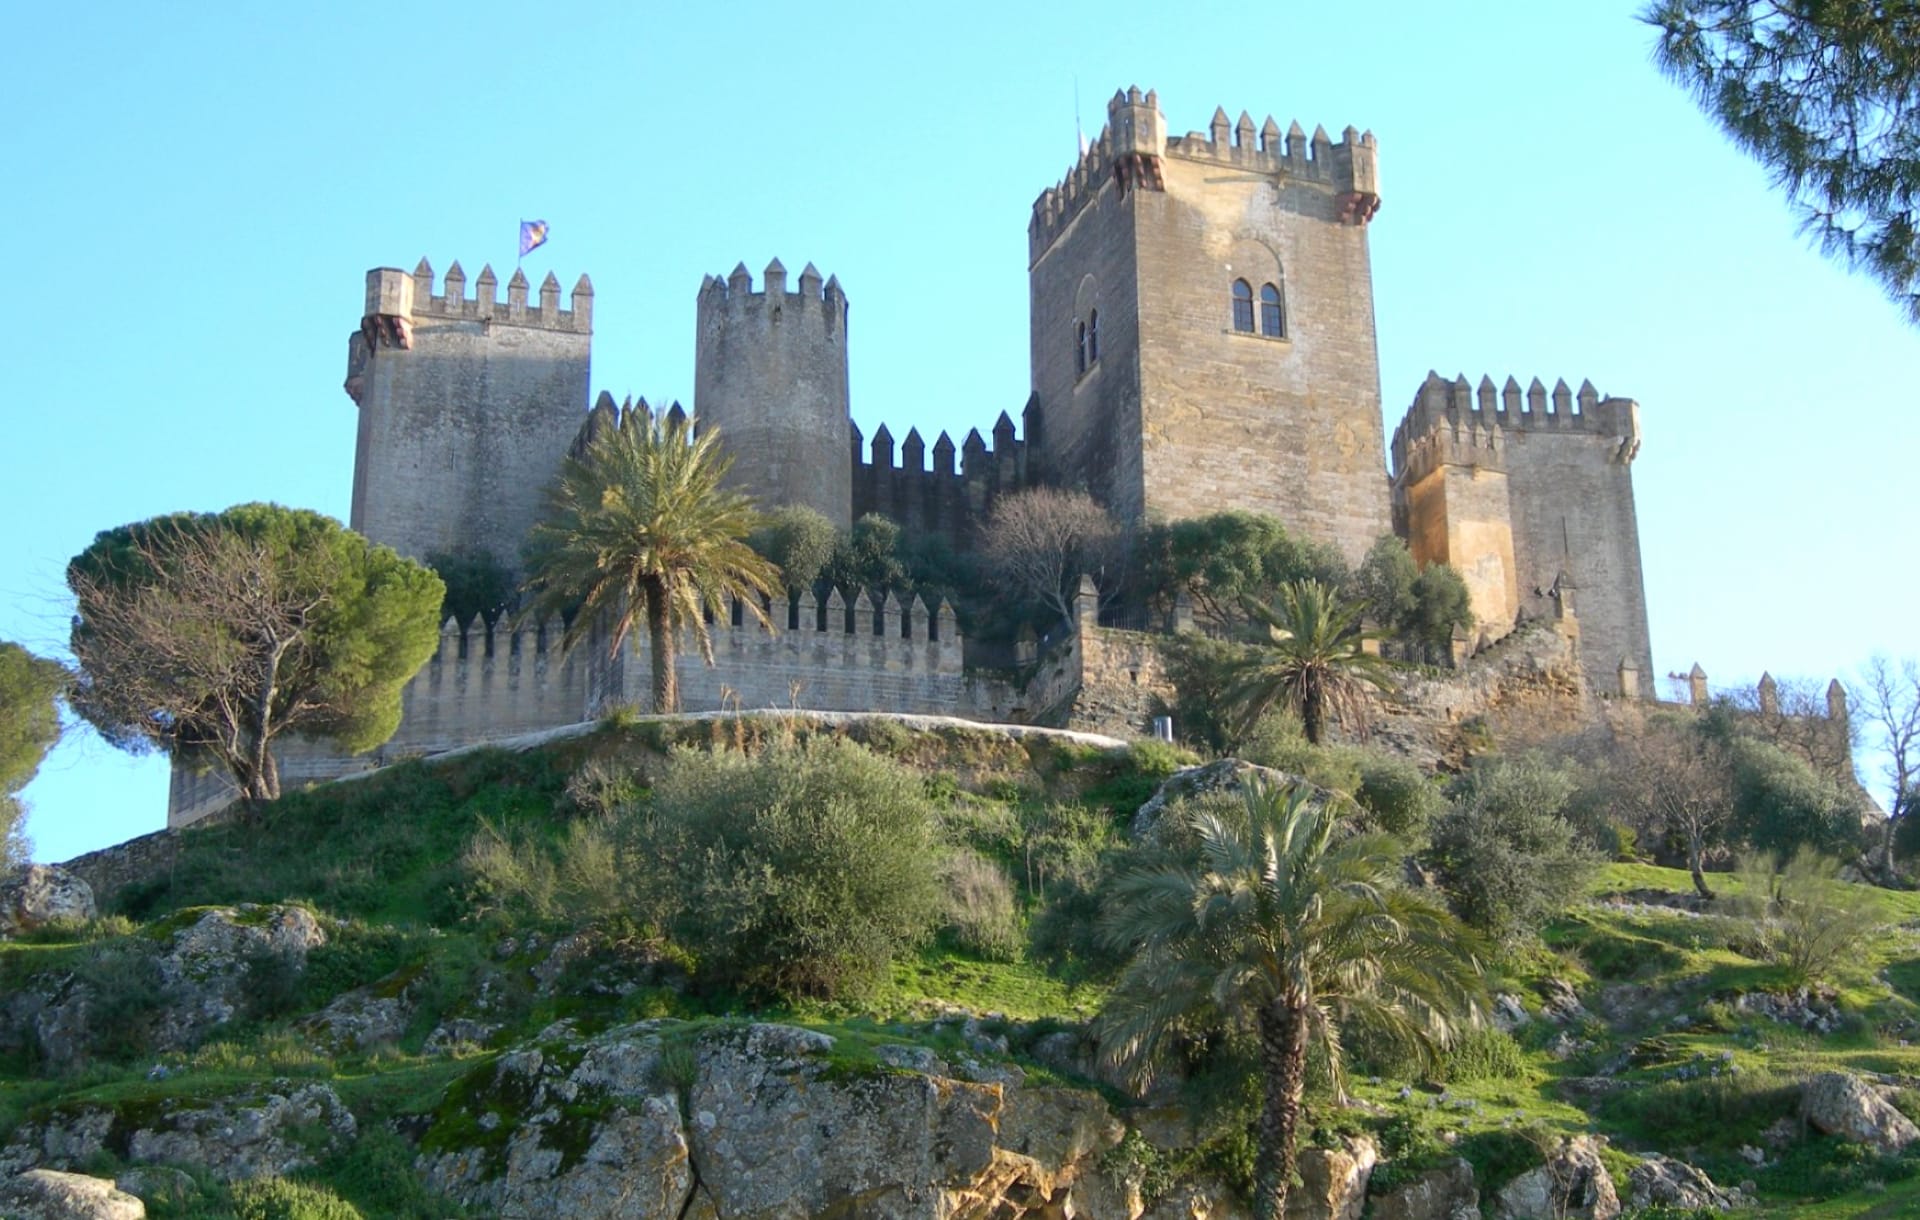 Castillo de Almodovar del Rio at 640 x 1136 iPhone 5 size wallpapers HD quality